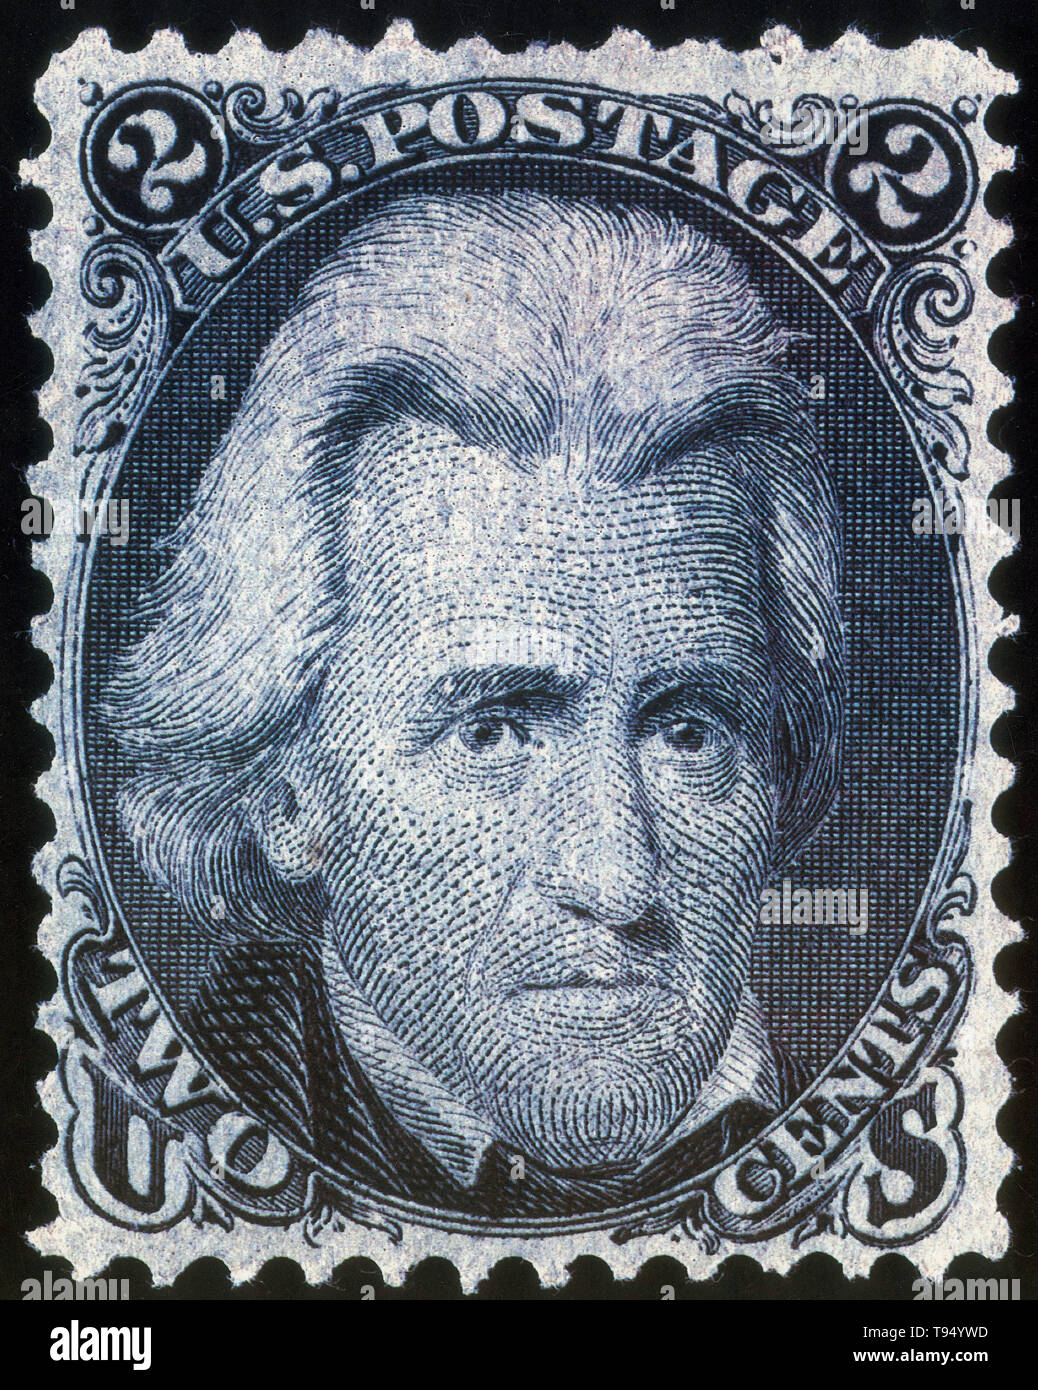 Black Jack o Blackjack era il 2¢ denominazione Stati Uniti francobollo rilasciati a partire dal 1 luglio 1863 al 1869, è generalmente indicato come il 'Black Jack' a causa della grande ritrattistica del Presidente degli Stati Uniti, Andrew Jackson sulla sua faccia stampata in nero pece. Foto Stock